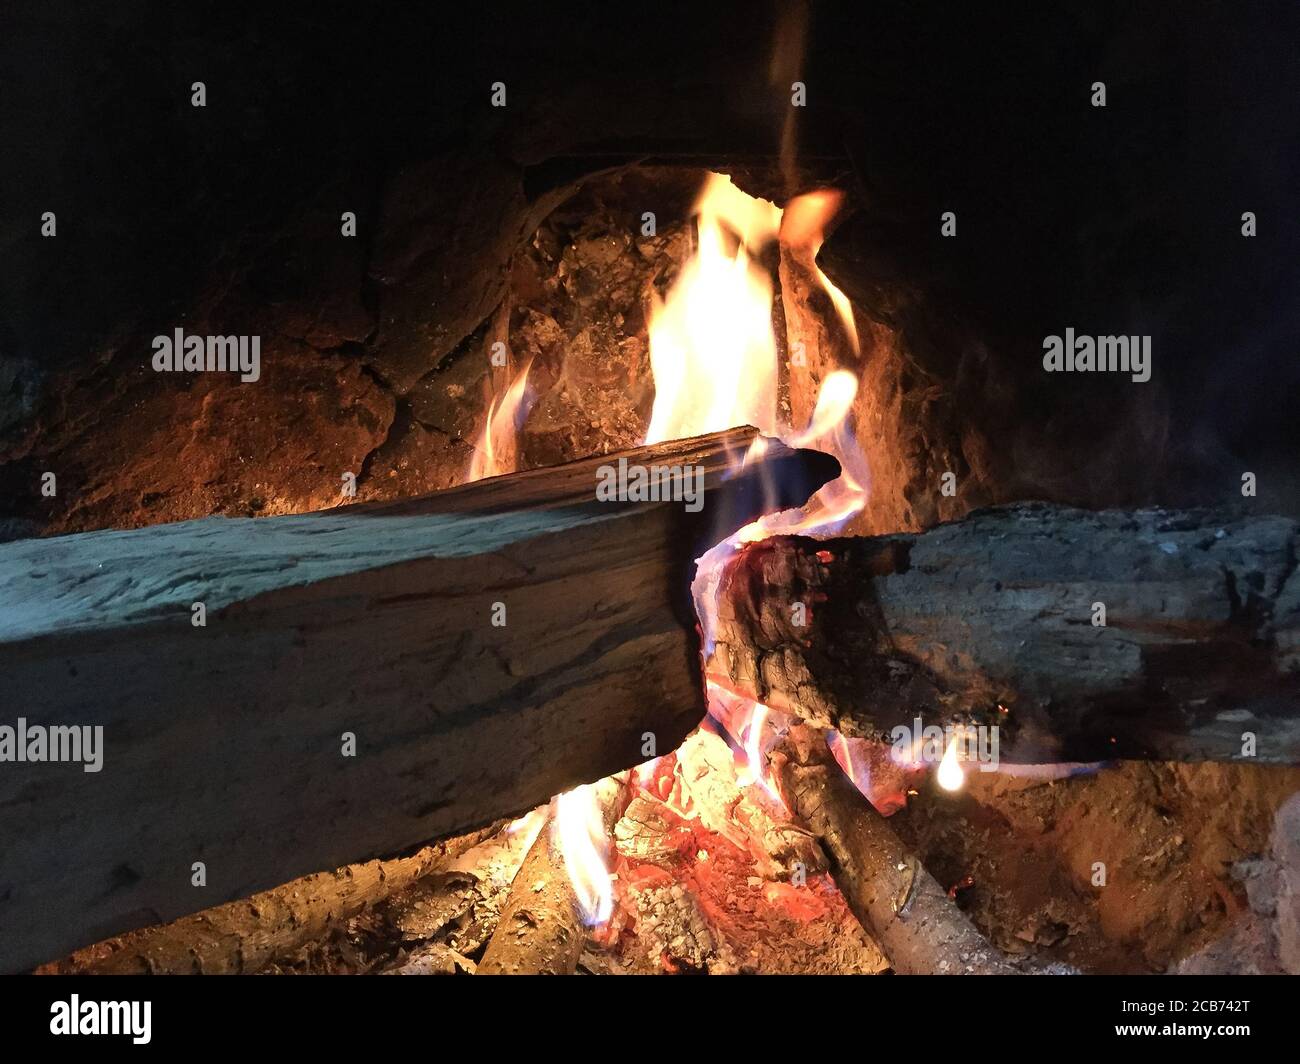 Traditionelle Art der Herstellung von Lebensmitteln durch die Verwendung von Holz als Bio-Brennstoff auf offenem Feuer in der alten Küche in einem Dorf. Ländliche Küche mit Bio-Holz Brennstoff zum Kochen. Stockfoto